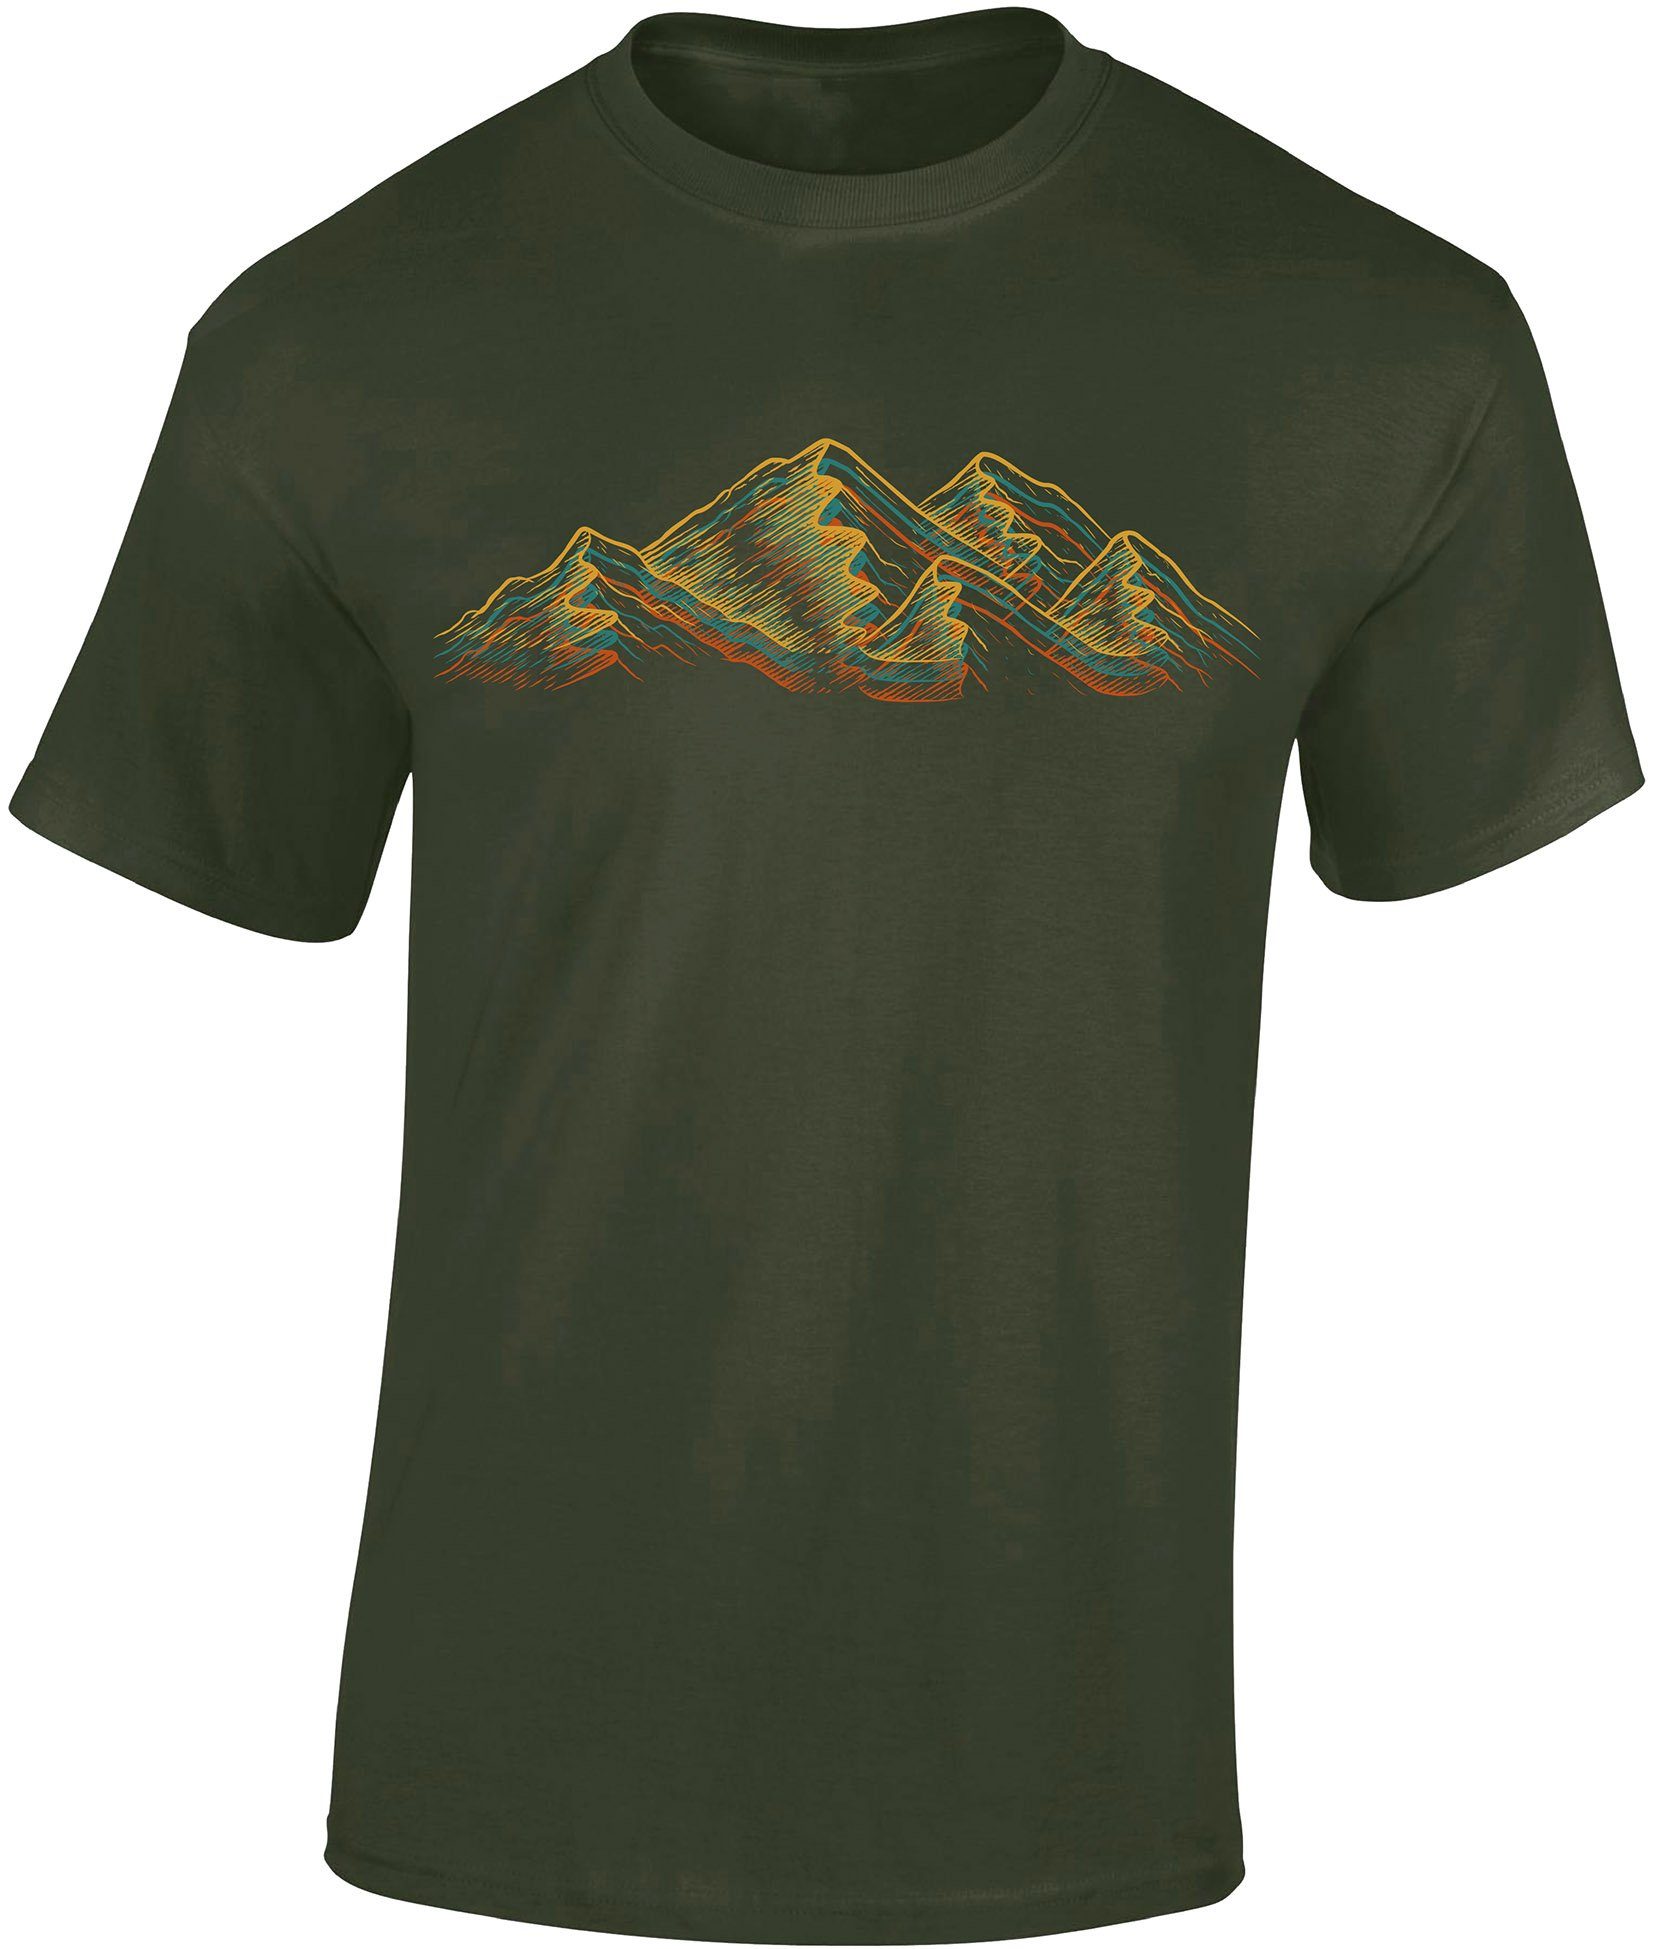 Baddery Print-Shirt Wander Shirt : Alpen - Kletter T-Shirt für Wanderfreunde - Bergsteiger hochwertiger Siebdruck, auch Übergrößen, aus Baumwolle Army Grün